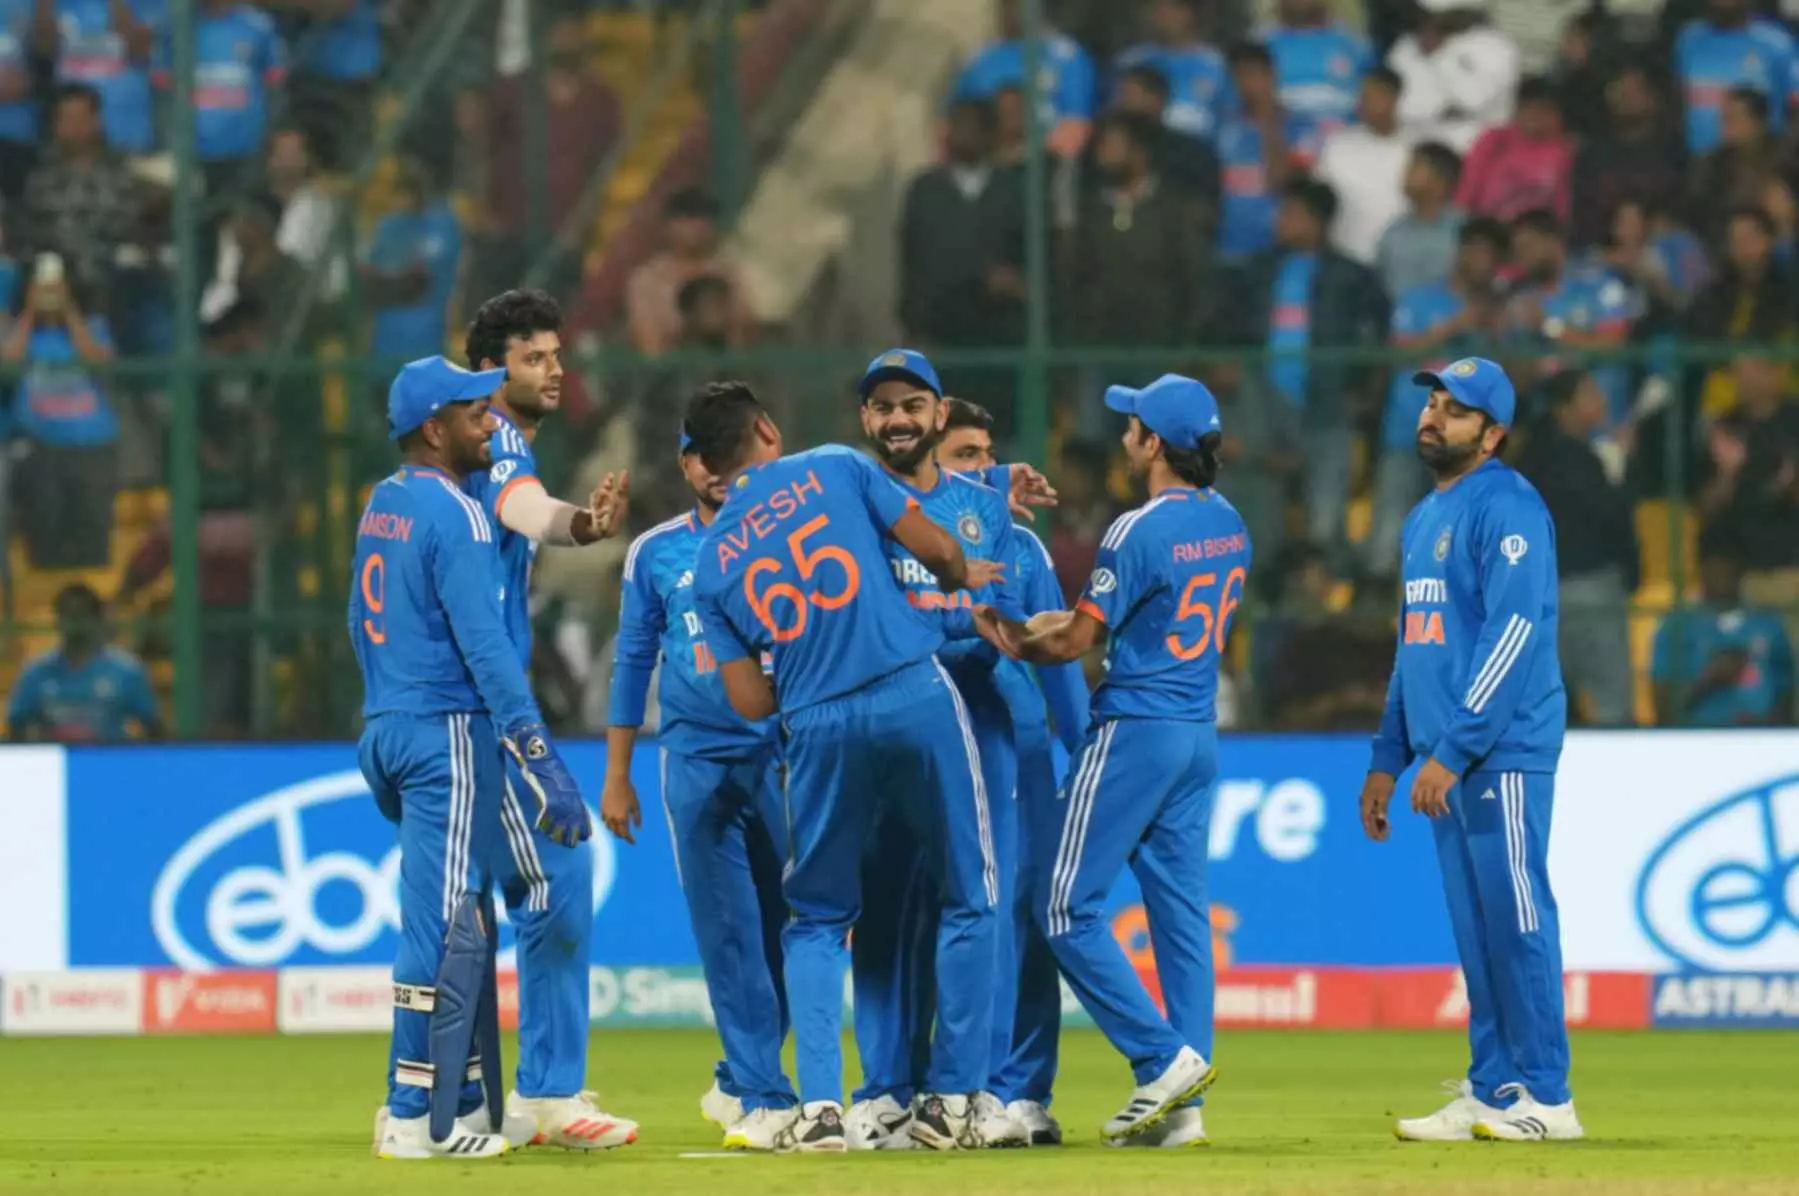 IND vs AFG 3rd T20I Highlights: भारत ने दूसरे सुपर ओवर में दर्ज की जीत, सीरीज पर 3-0 से जमाया कब्जा